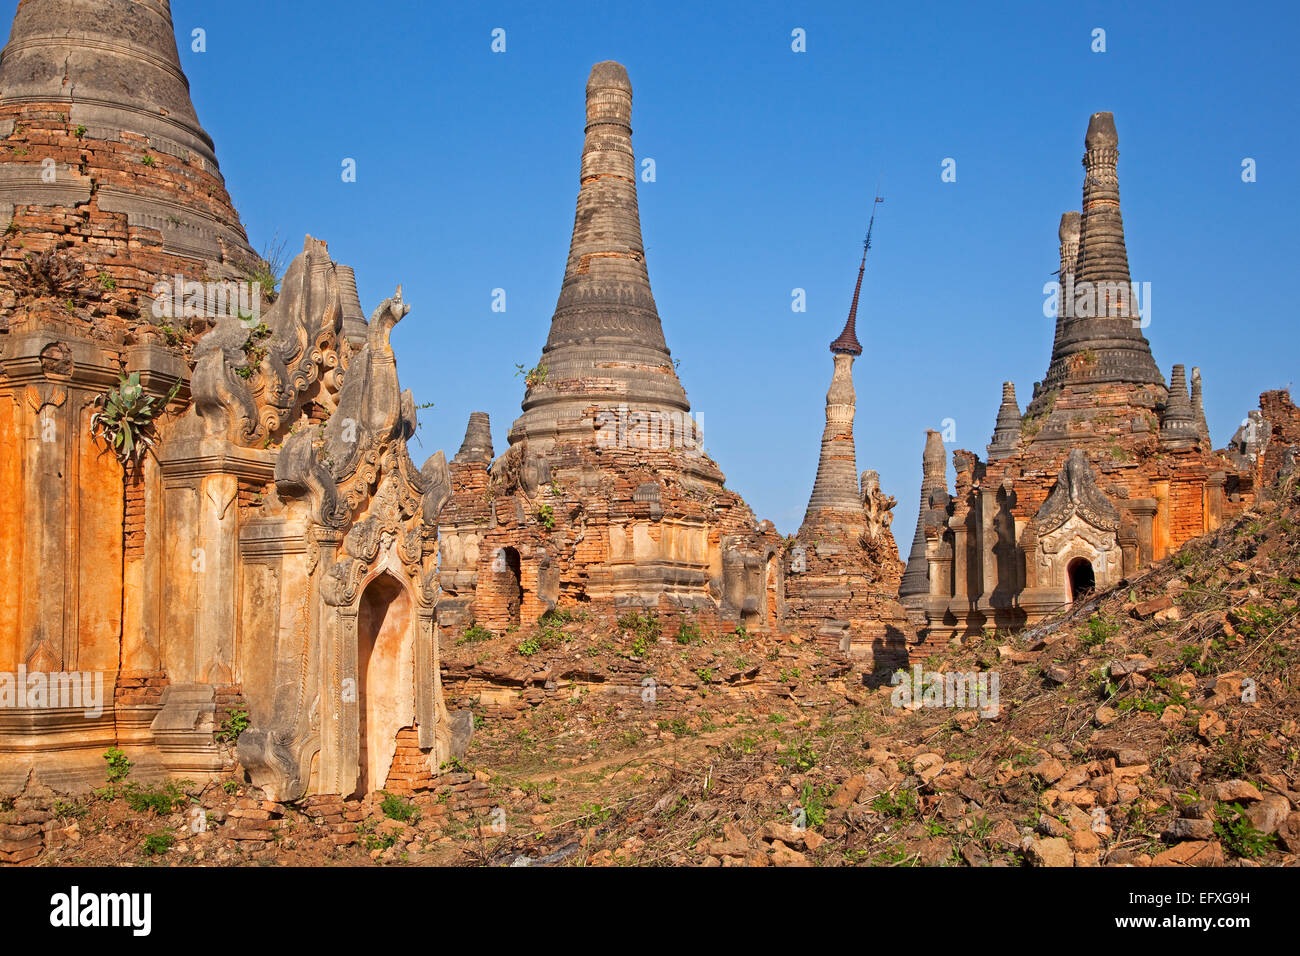 Alten rote Ziegeln buddhistischen Stupas in der Nähe des Dorfes In Dein / Indein, Inle-See, Nyaungshwe Shan State in Myanmar / Birma Stockfoto